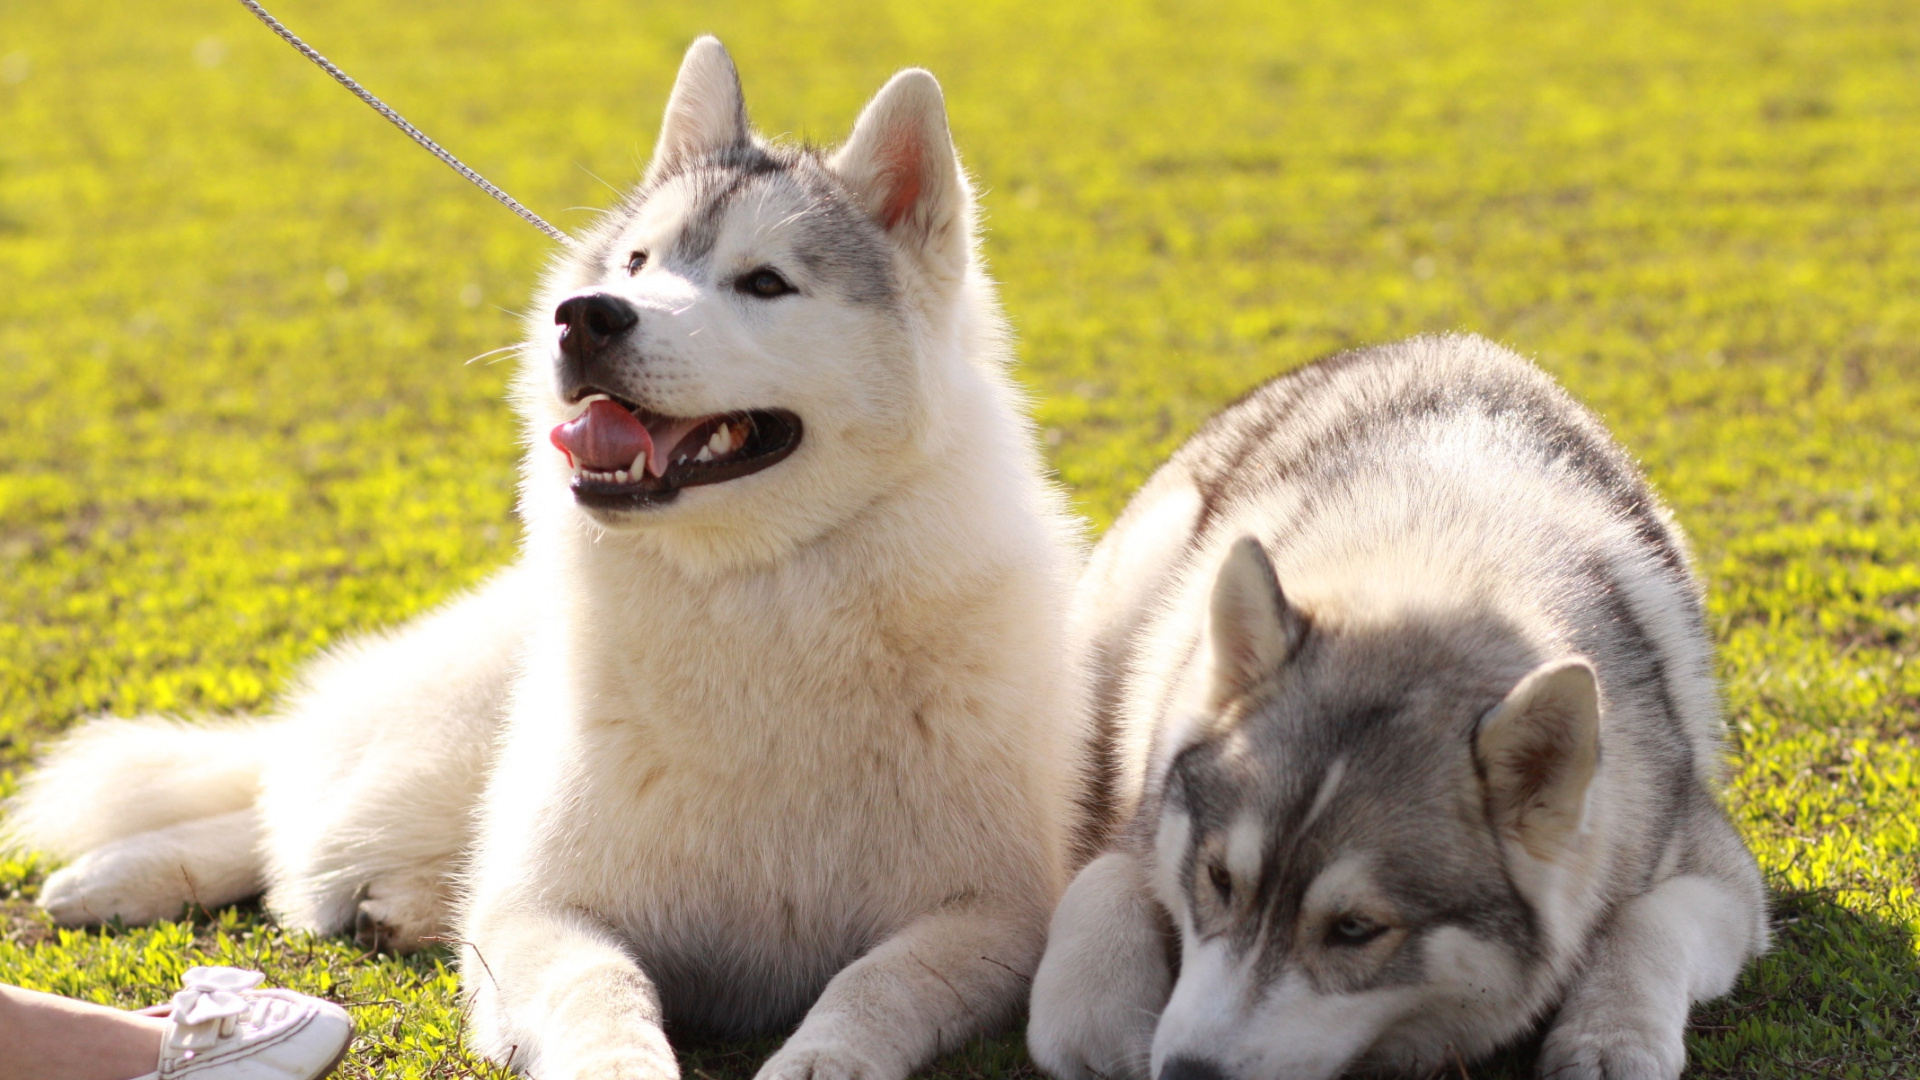 Tamaskan狗, 微型哈士奇, 西西伯利亚的莱卡, 东西伯利亚的莱卡, 阿拉斯加雪橇犬 壁纸 1920x1080 允许